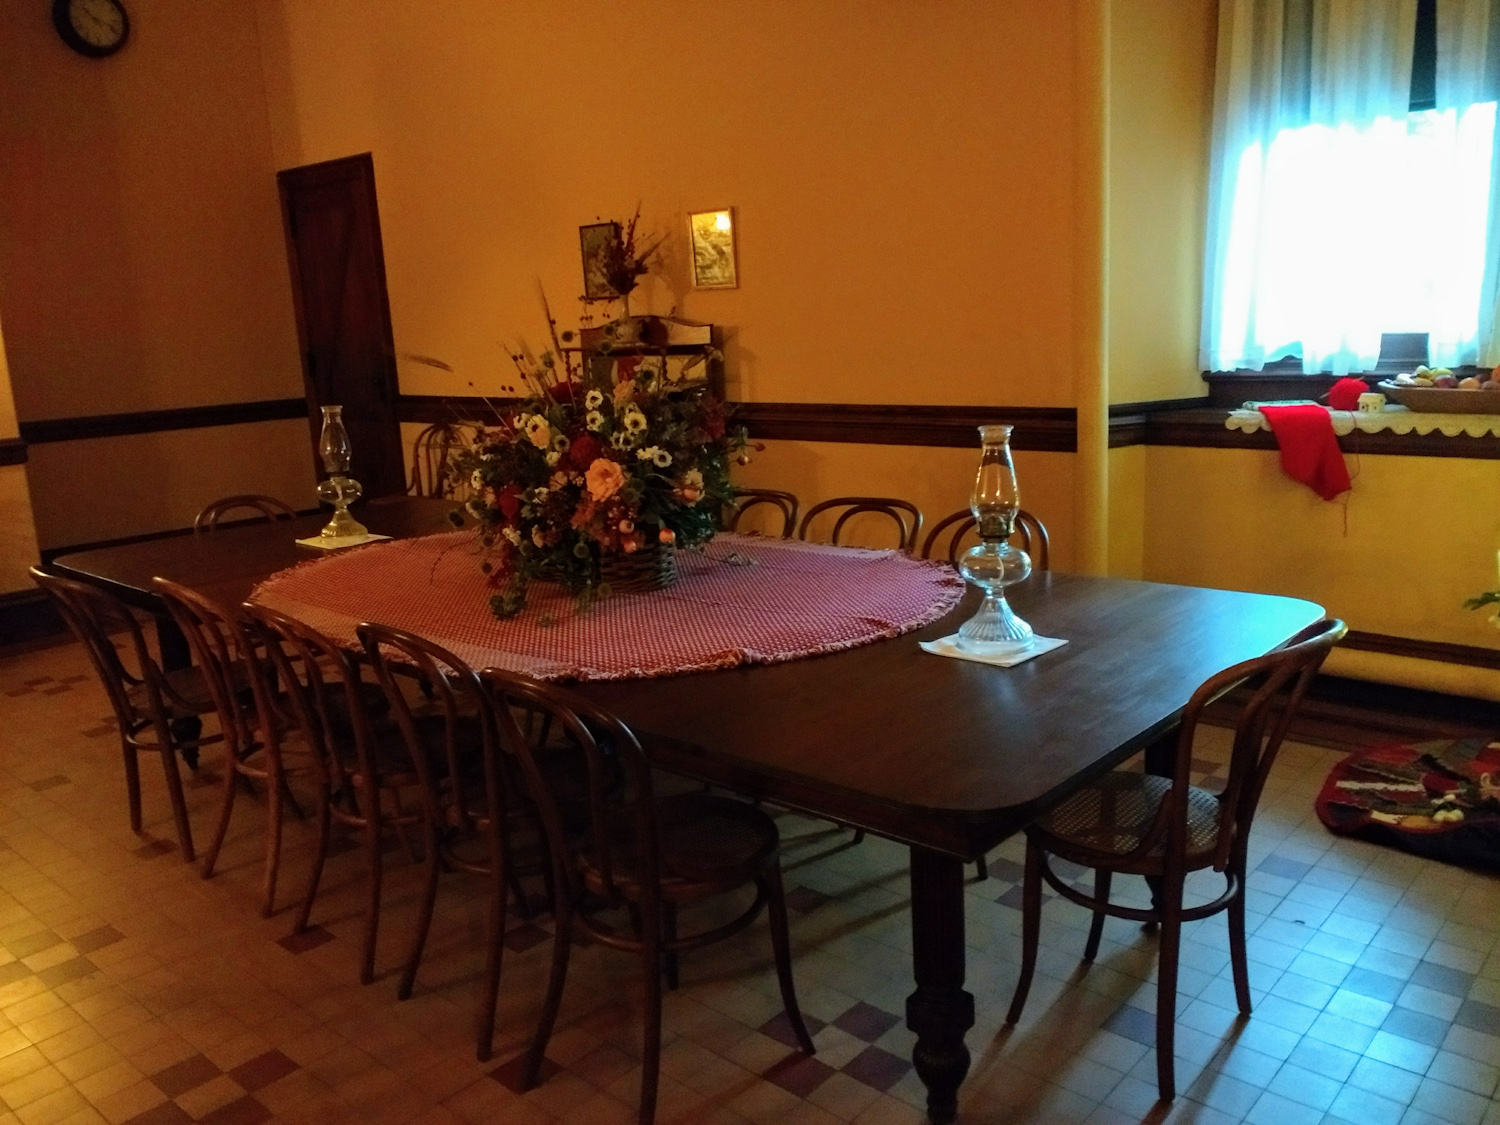 Servants' dining room